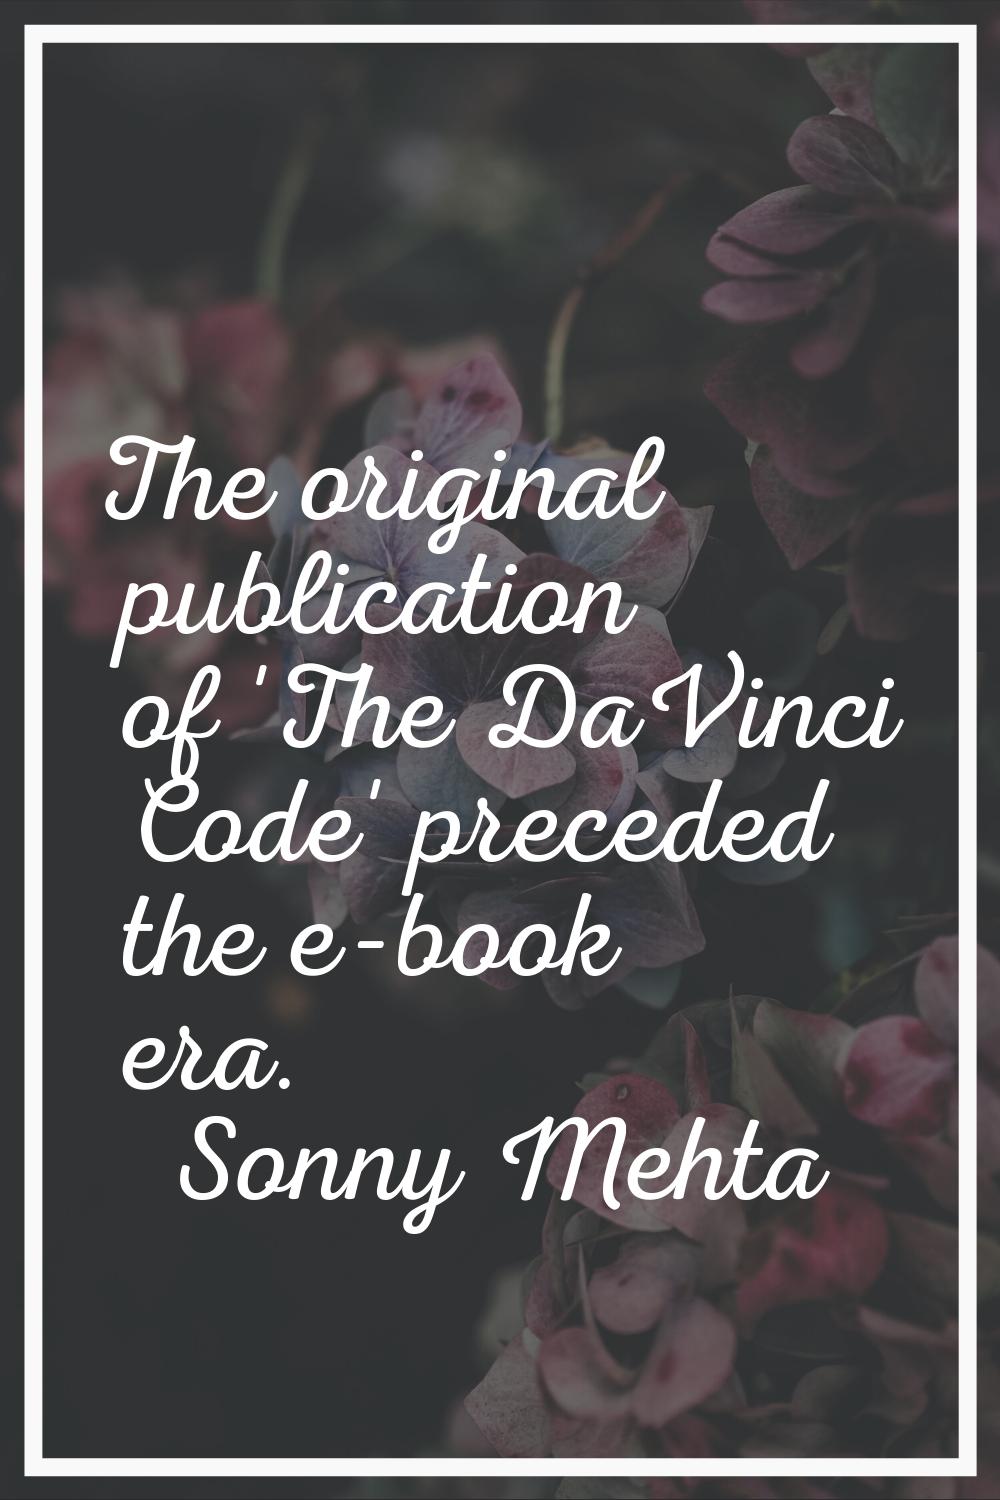 The original publication of 'The DaVinci Code' preceded the e-book era.